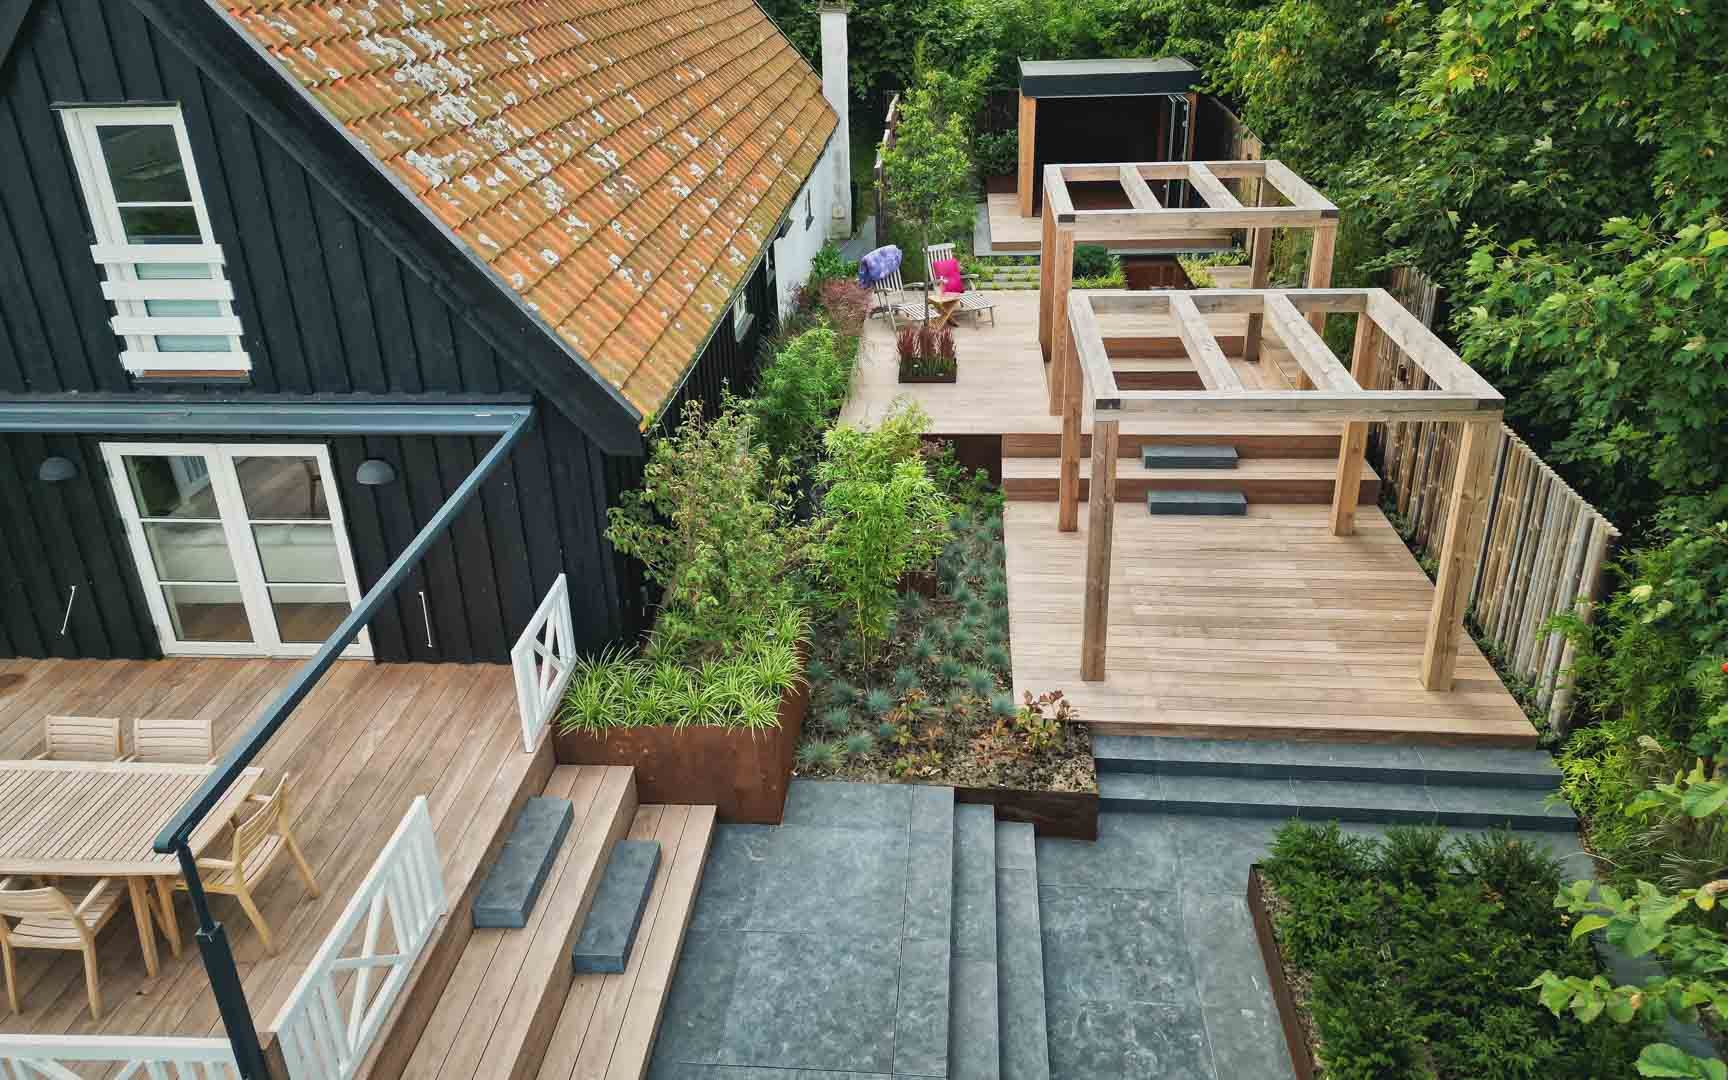 112 m2 terrasse og meditationshave i Vejby